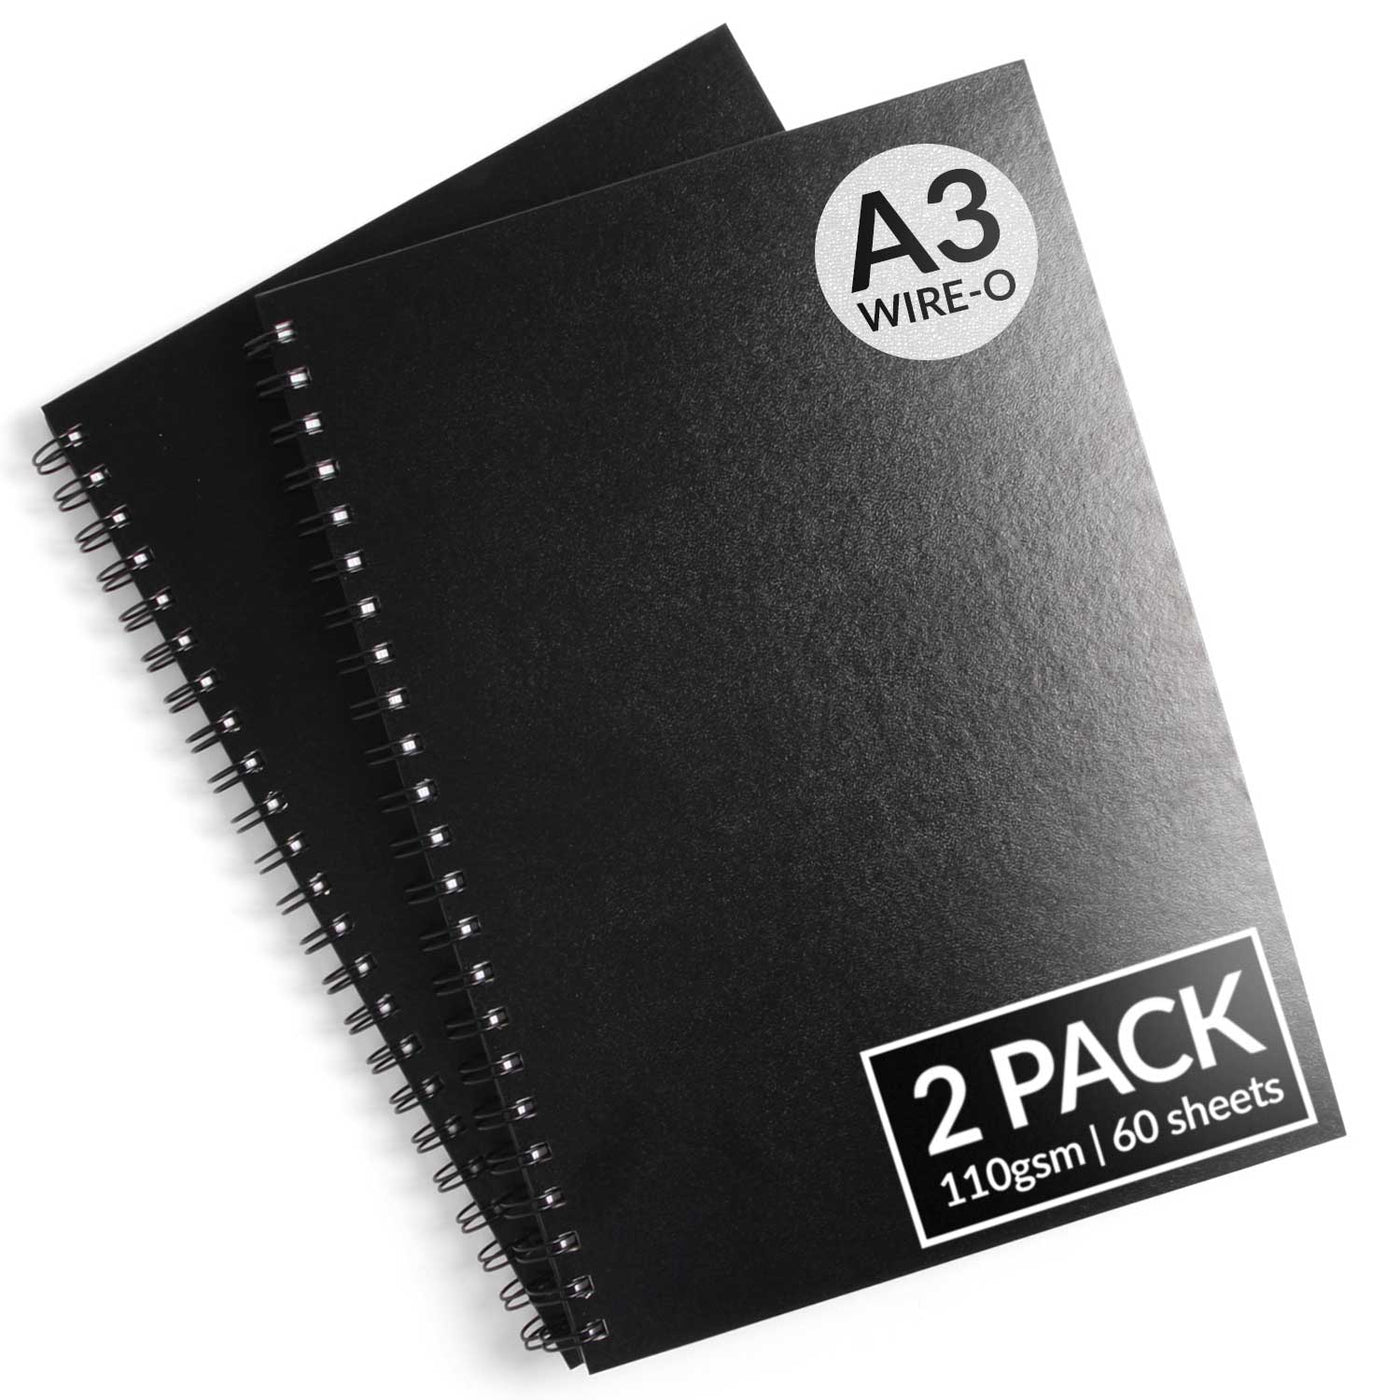 A3 Spiral-Bound Hardcover Sketchbook - 2 Pack*